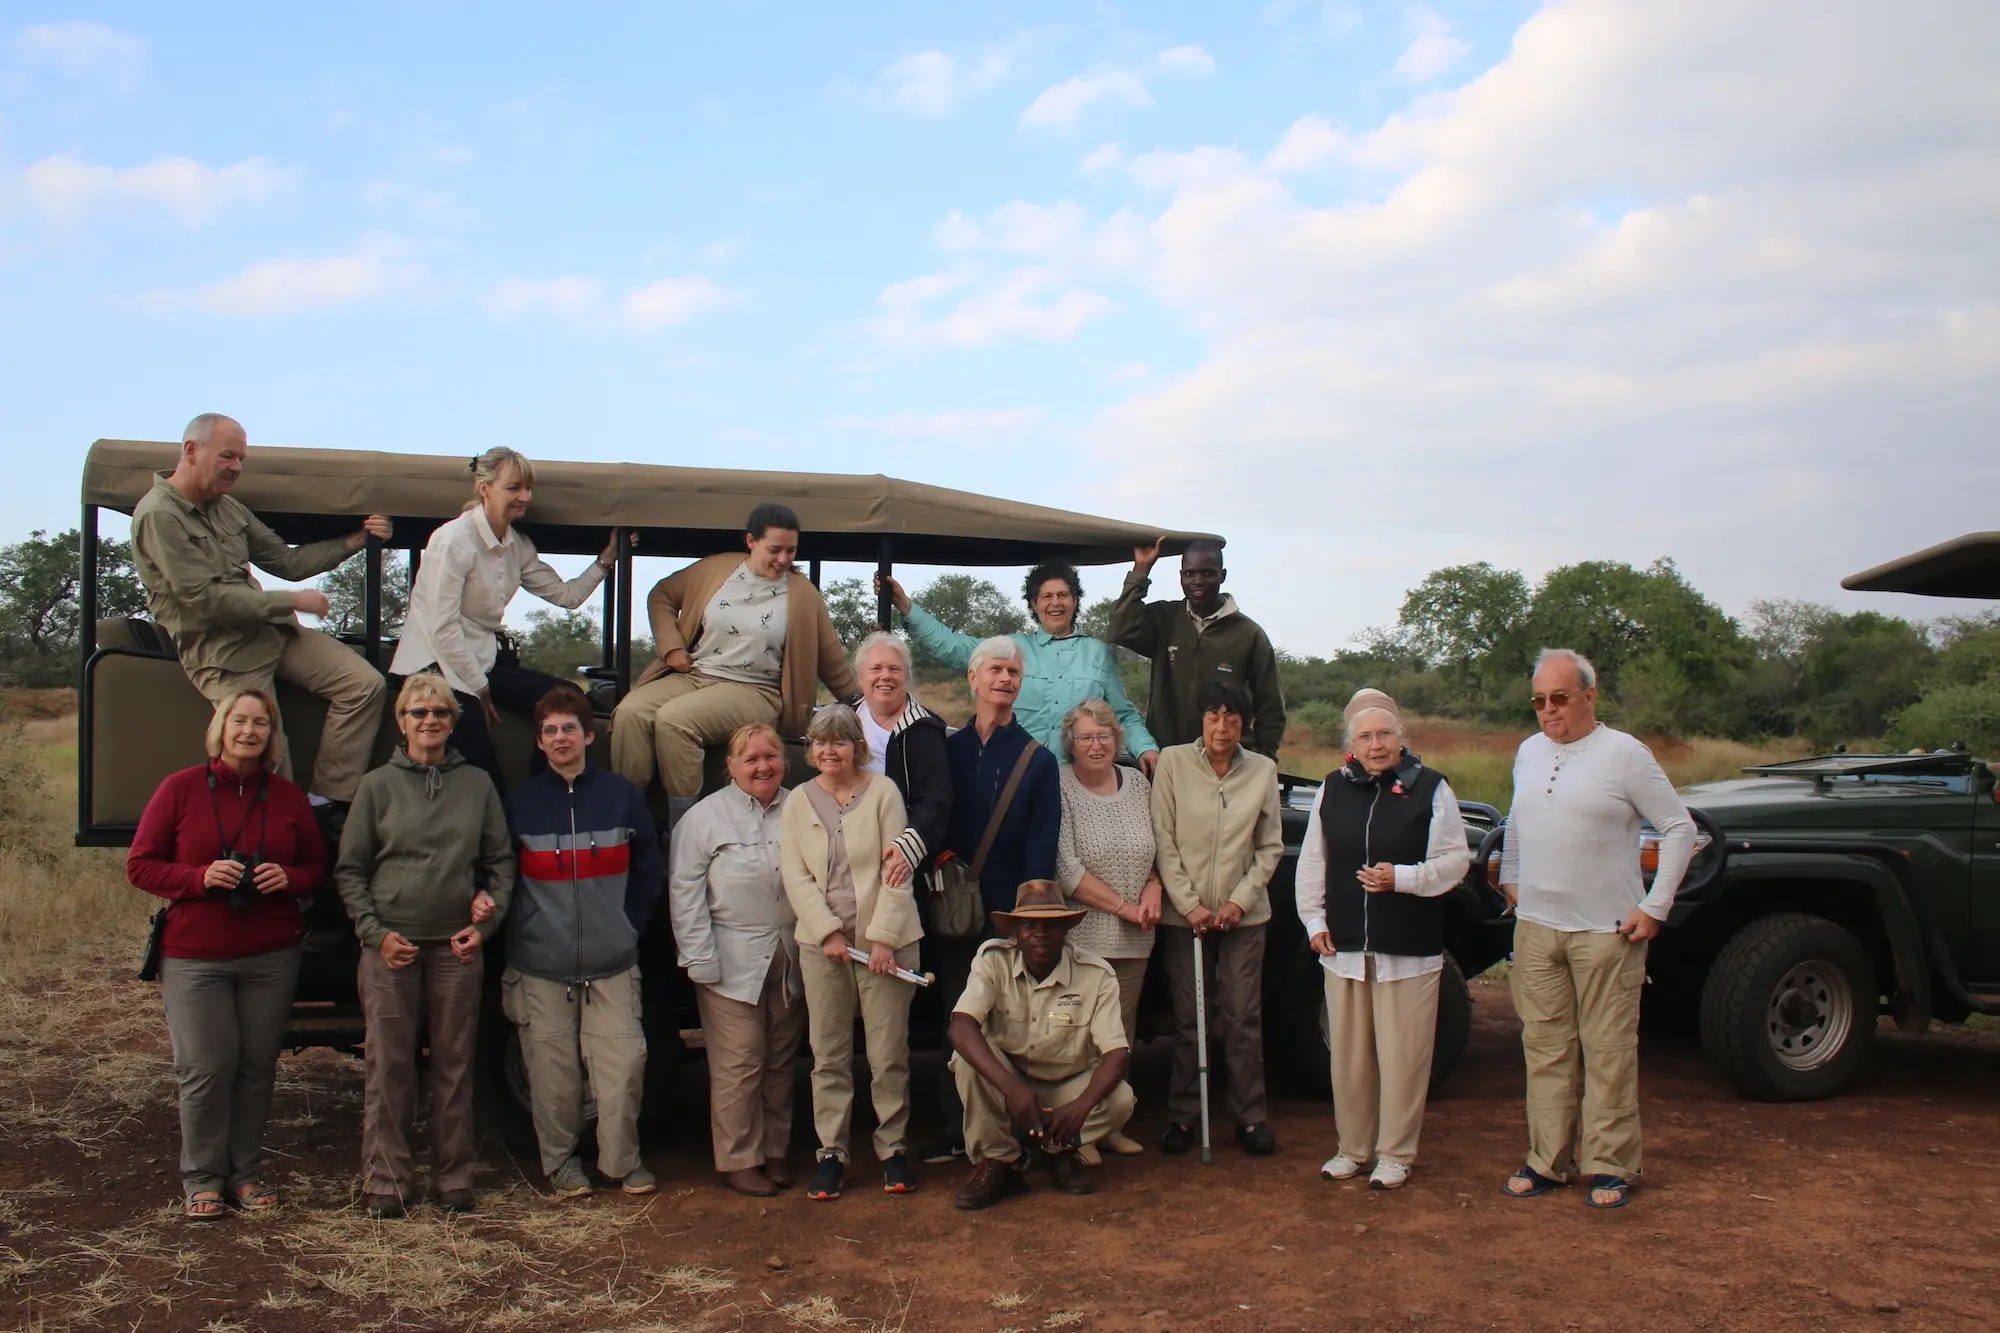 Sensory safari group photo in Eswatini